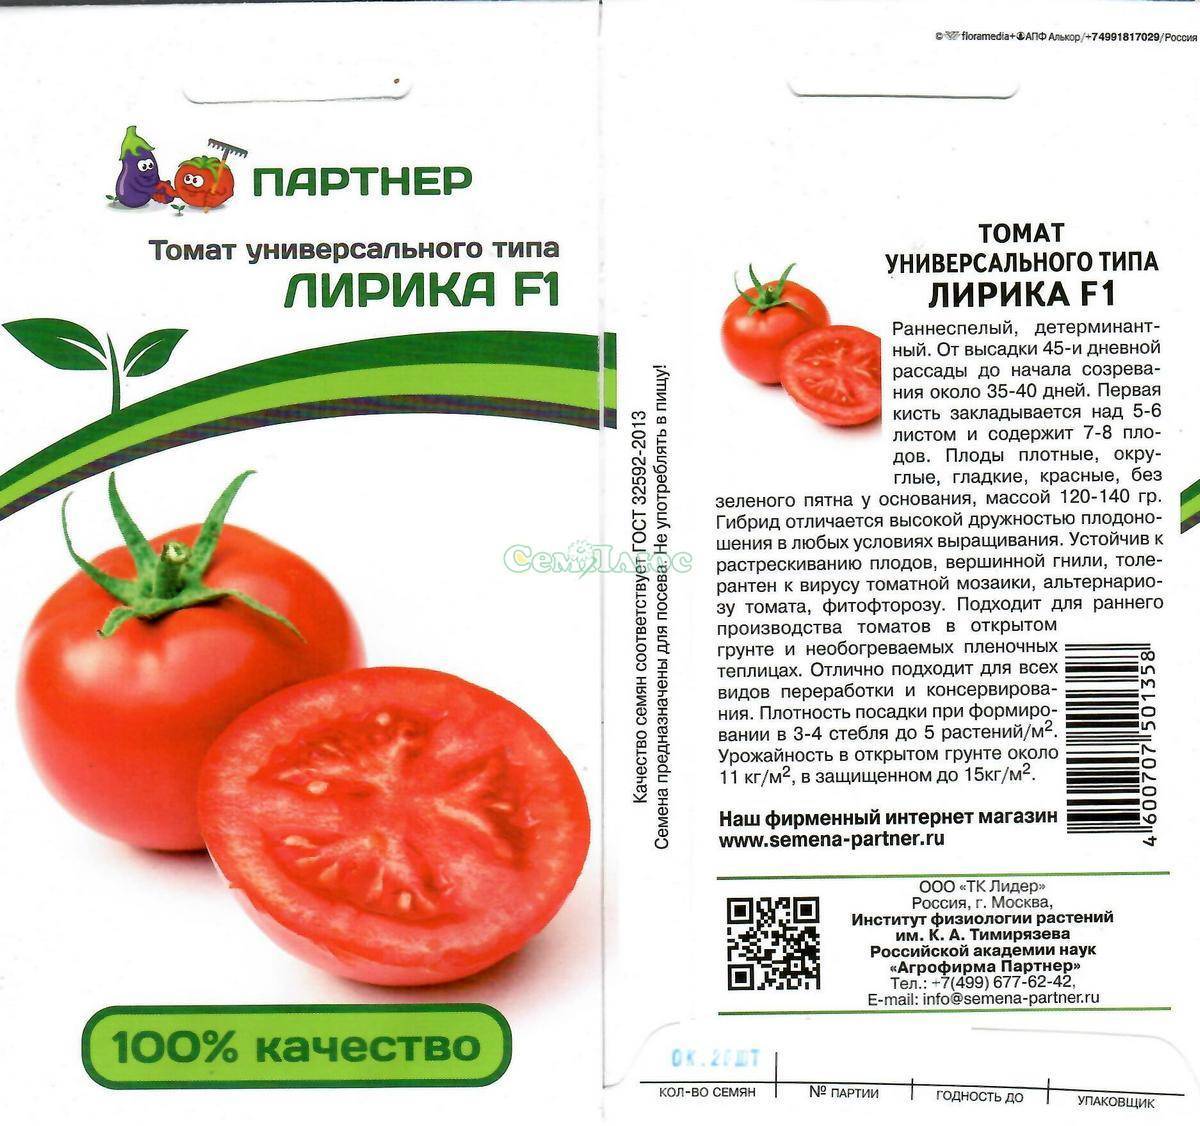 Детерминантные сорта томатов: краткий обзор и особенности агротехники